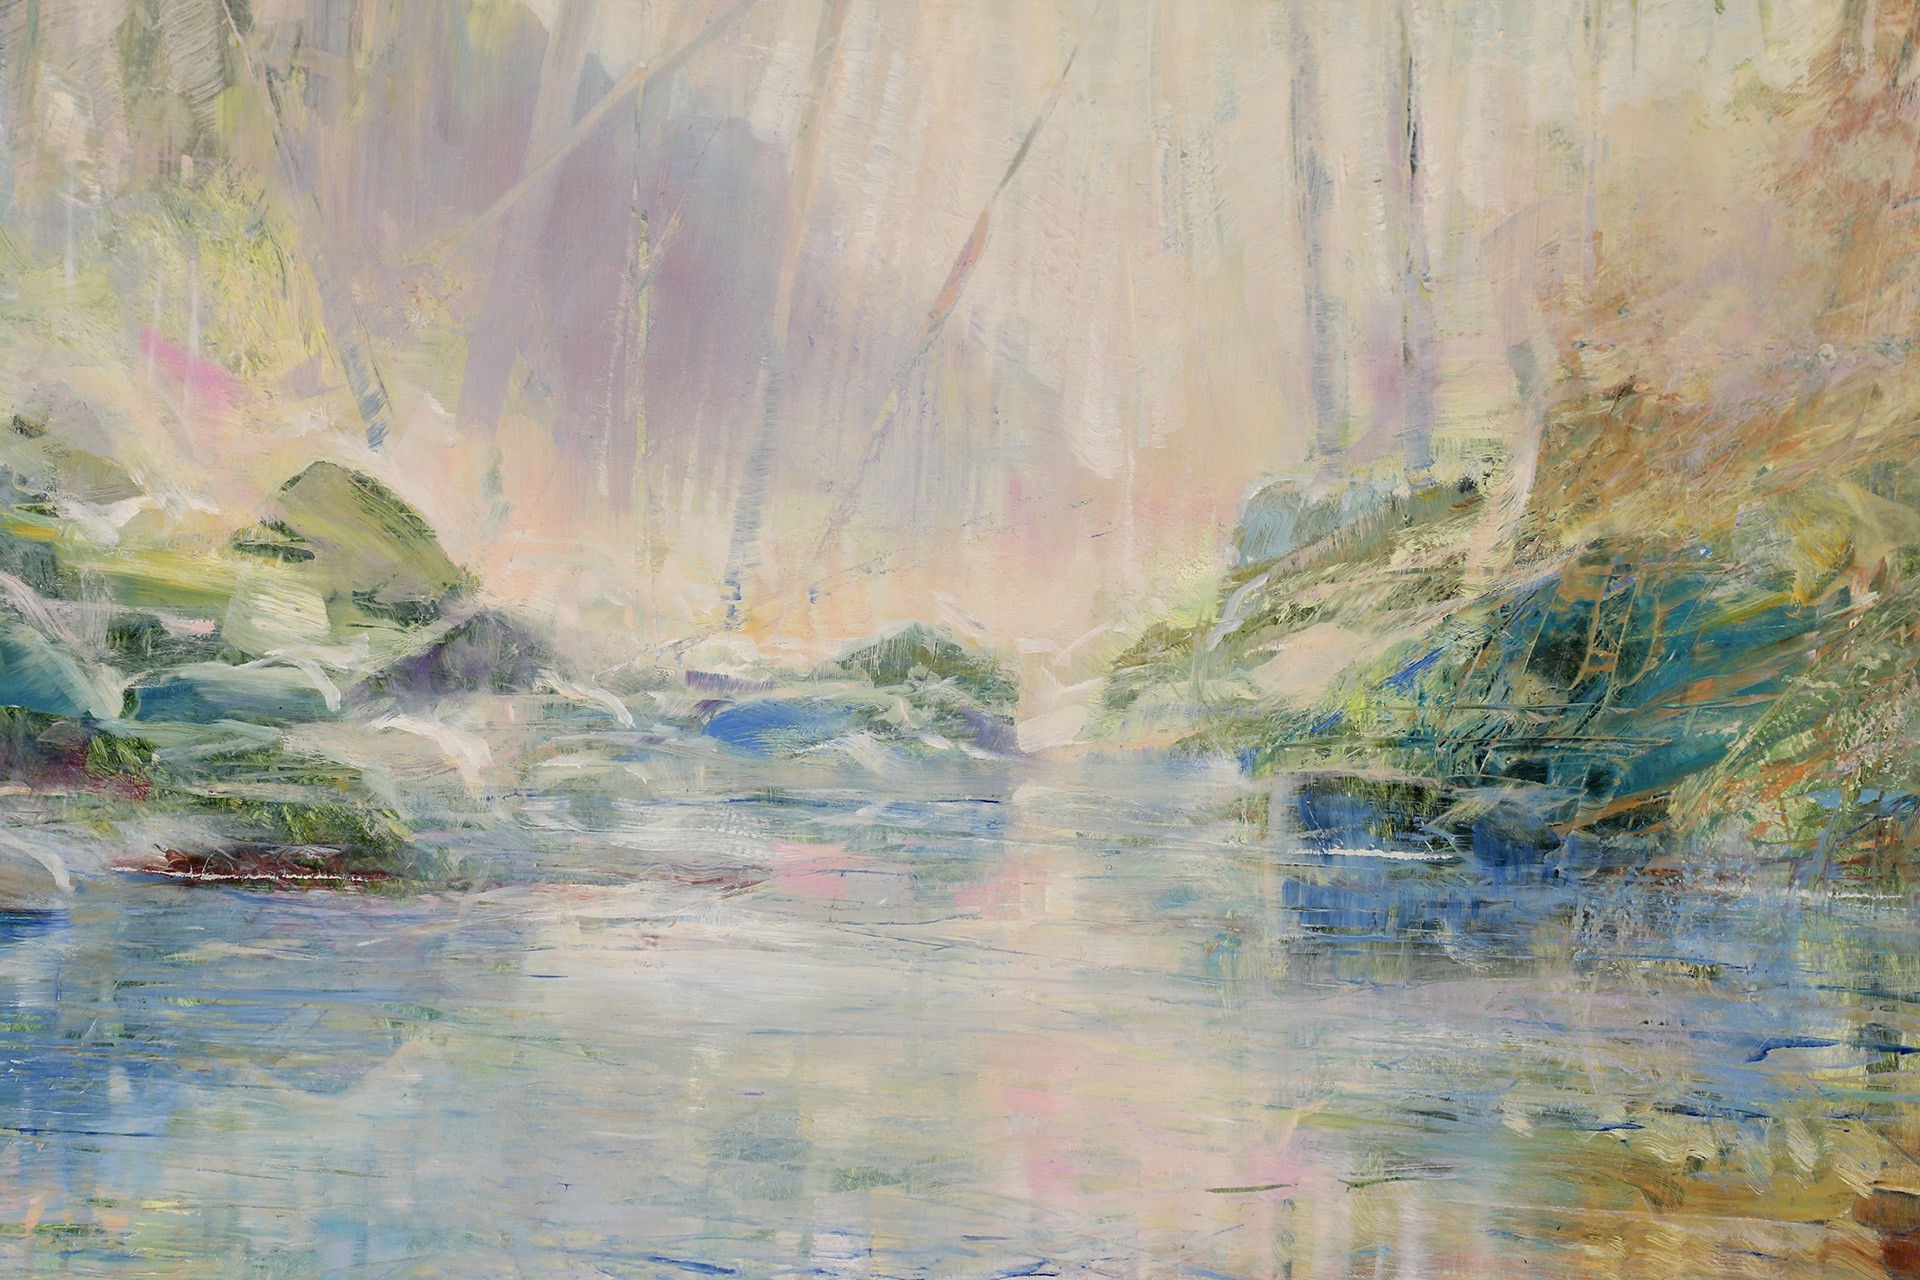 Misty Pond by David Allen Dunlop